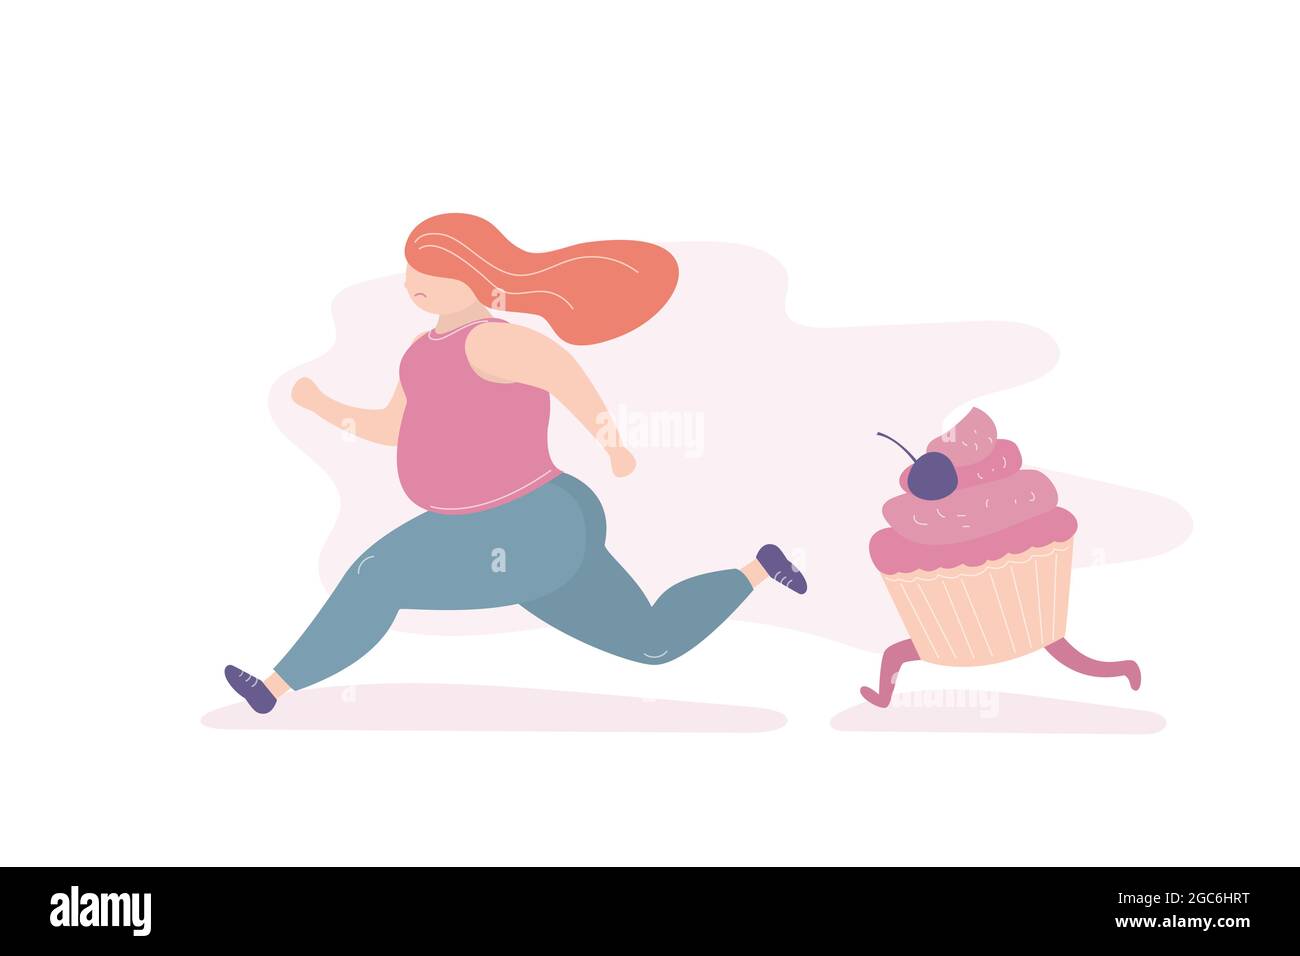 Unglücklich fette Mädchen läuft weg von einem großen Cupcake, Frau Angst vor dem Problem von Übergewicht und übermäßiges Essen, trendigen Stil Vektor-Illustration Stock Vektor